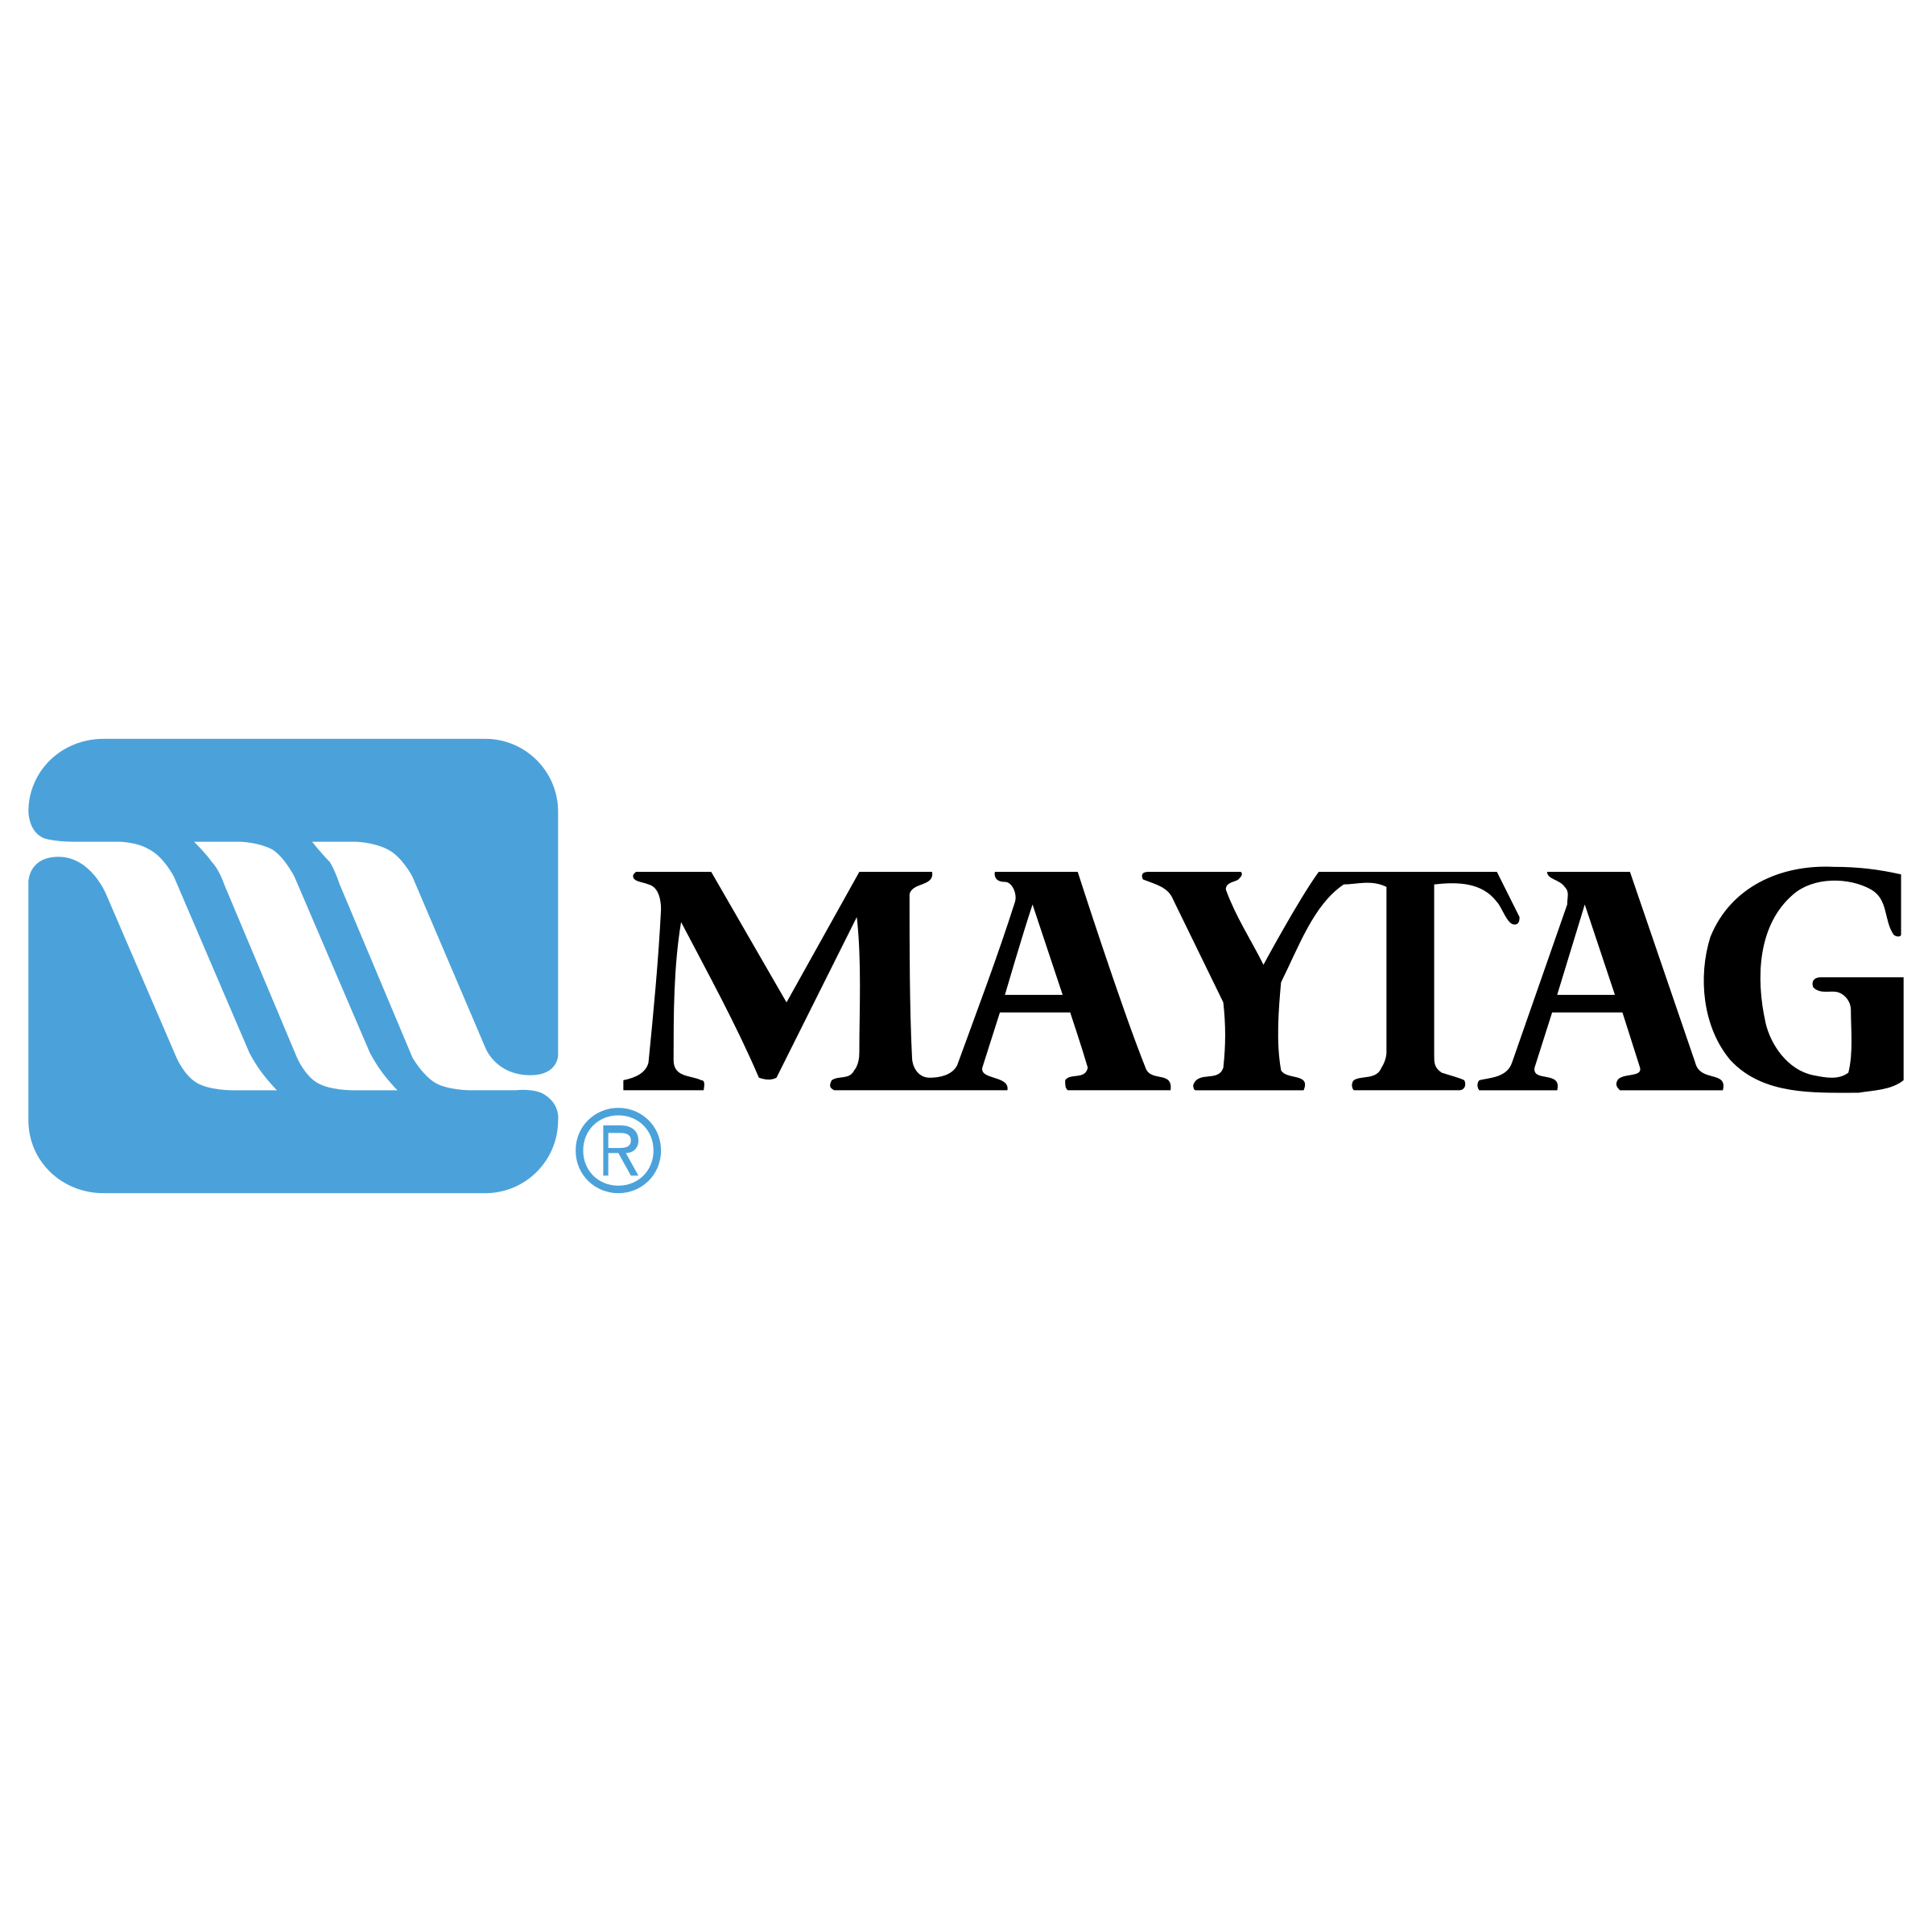 Matag Logo - Maytag Logo PNG Transparent & SVG Vector